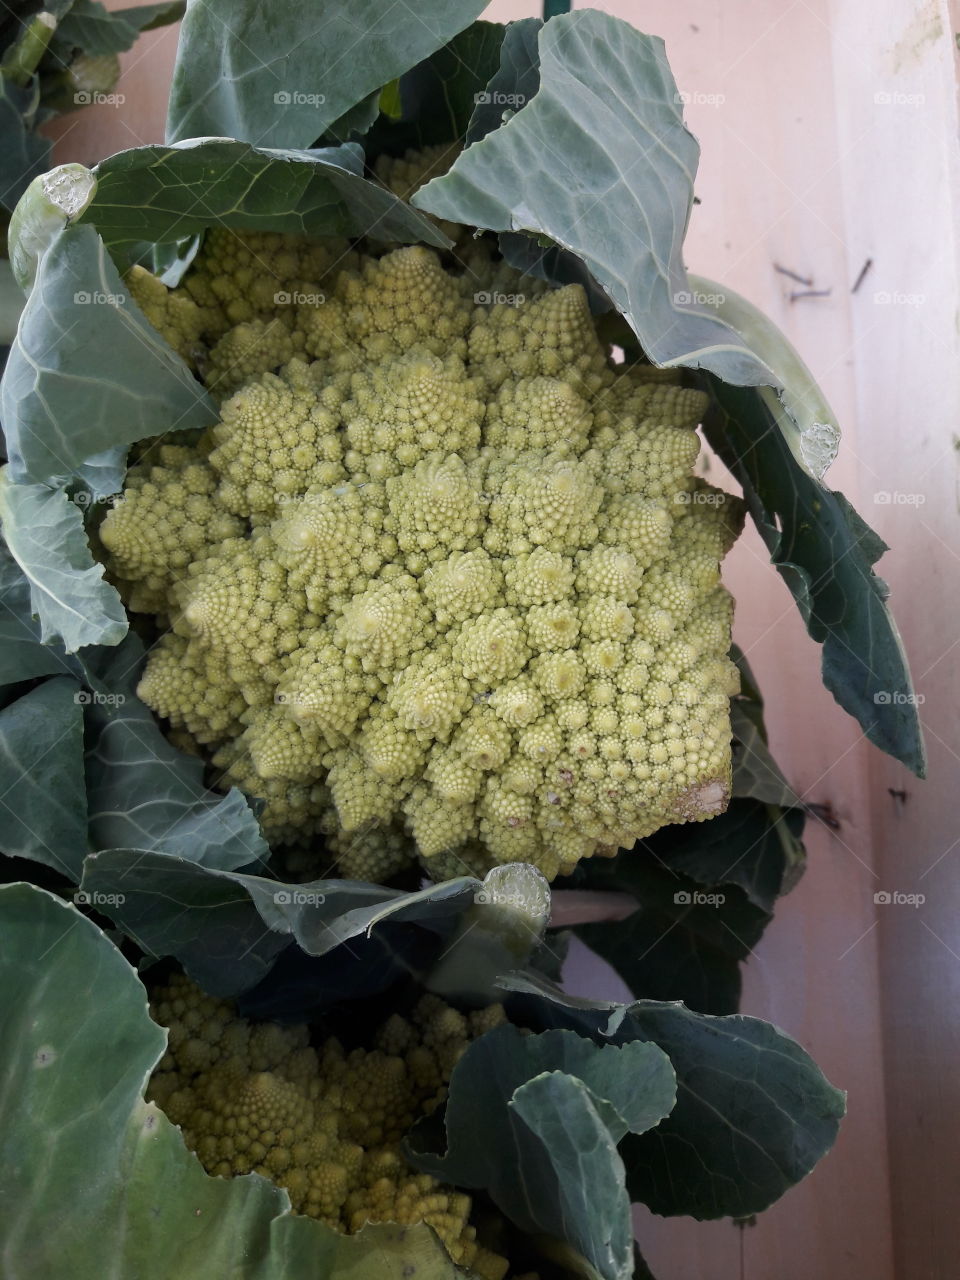 Italian cauliflower